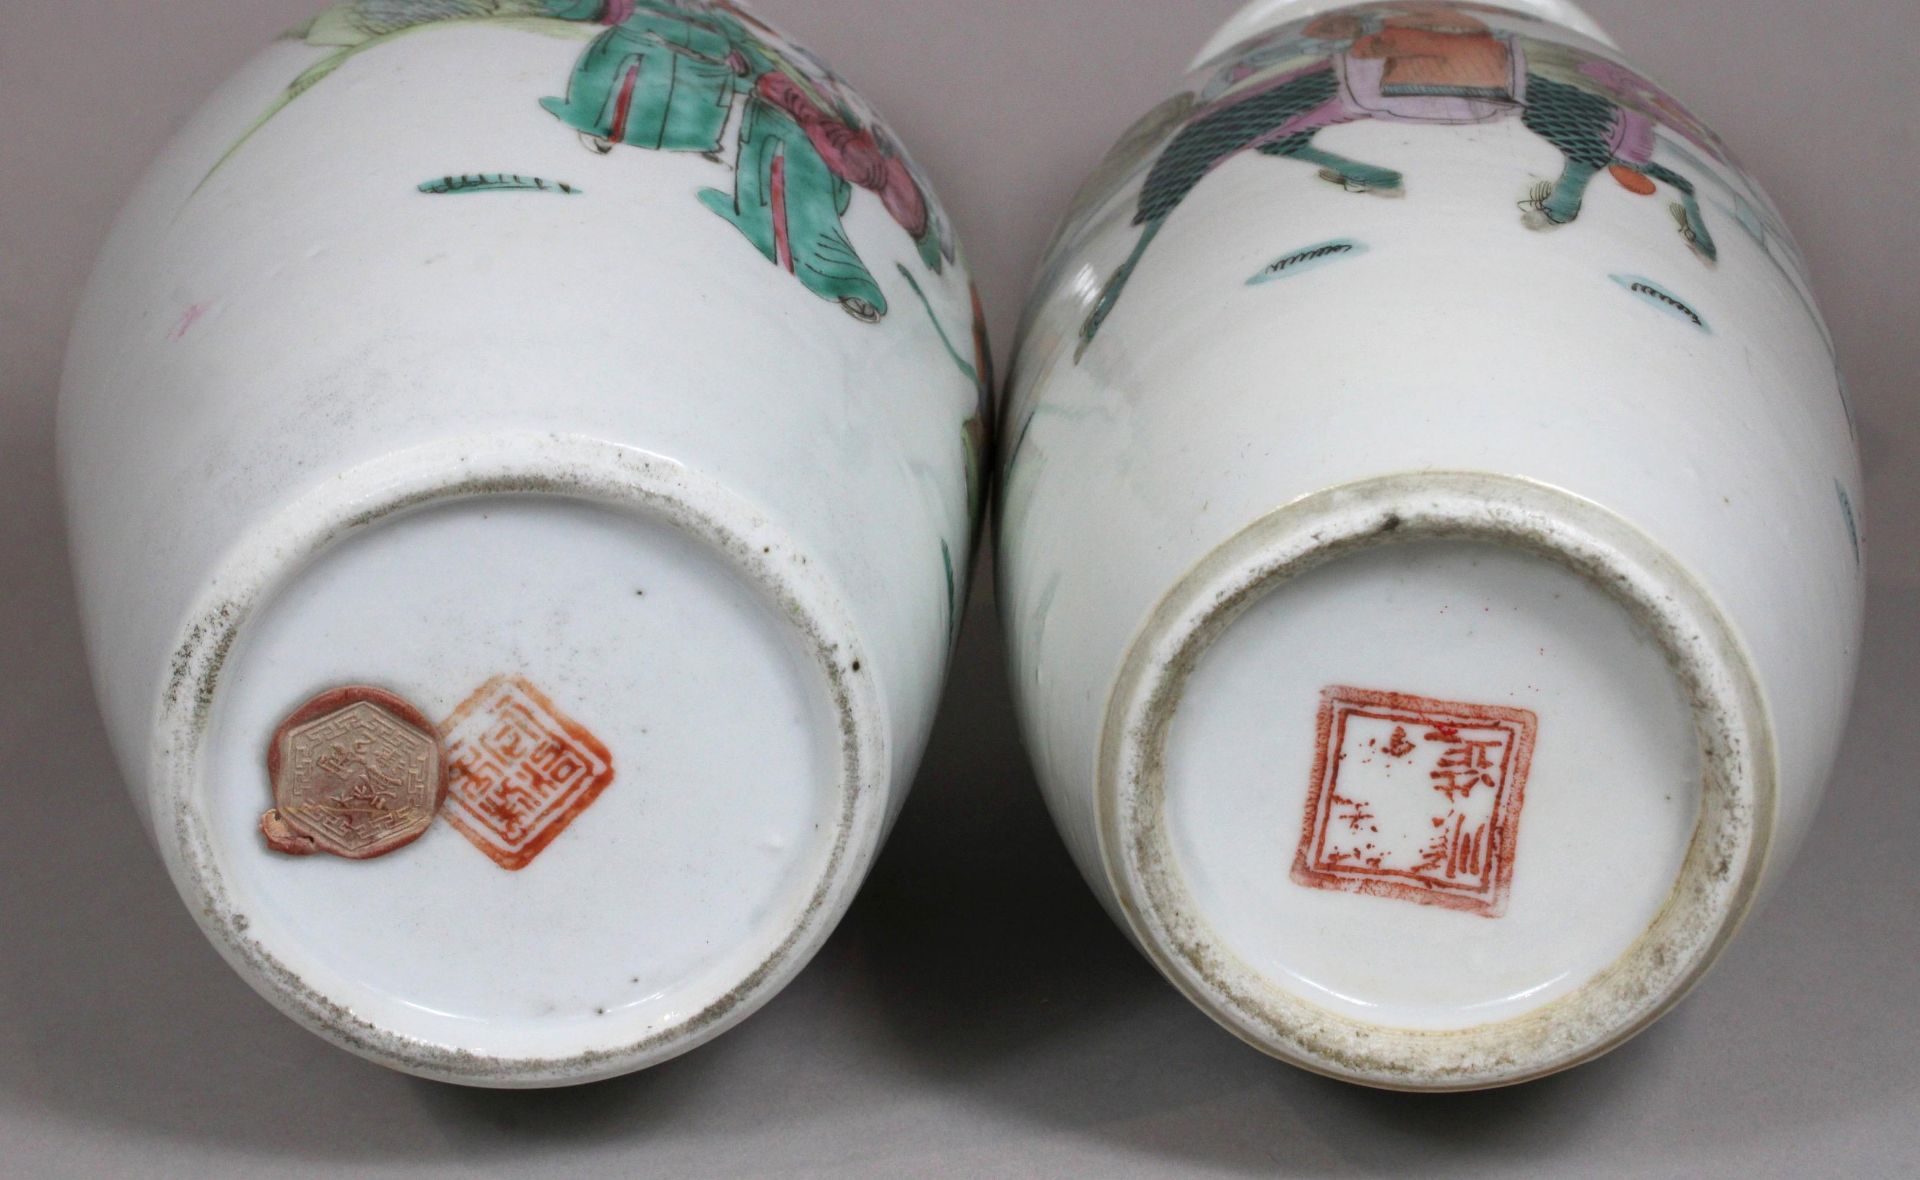 Paar Vasen, China, Porzellan, eine mit roten Tongzhi-Marke und Lack-Siegel, eine mit rote vierzeich - Bild 4 aus 4